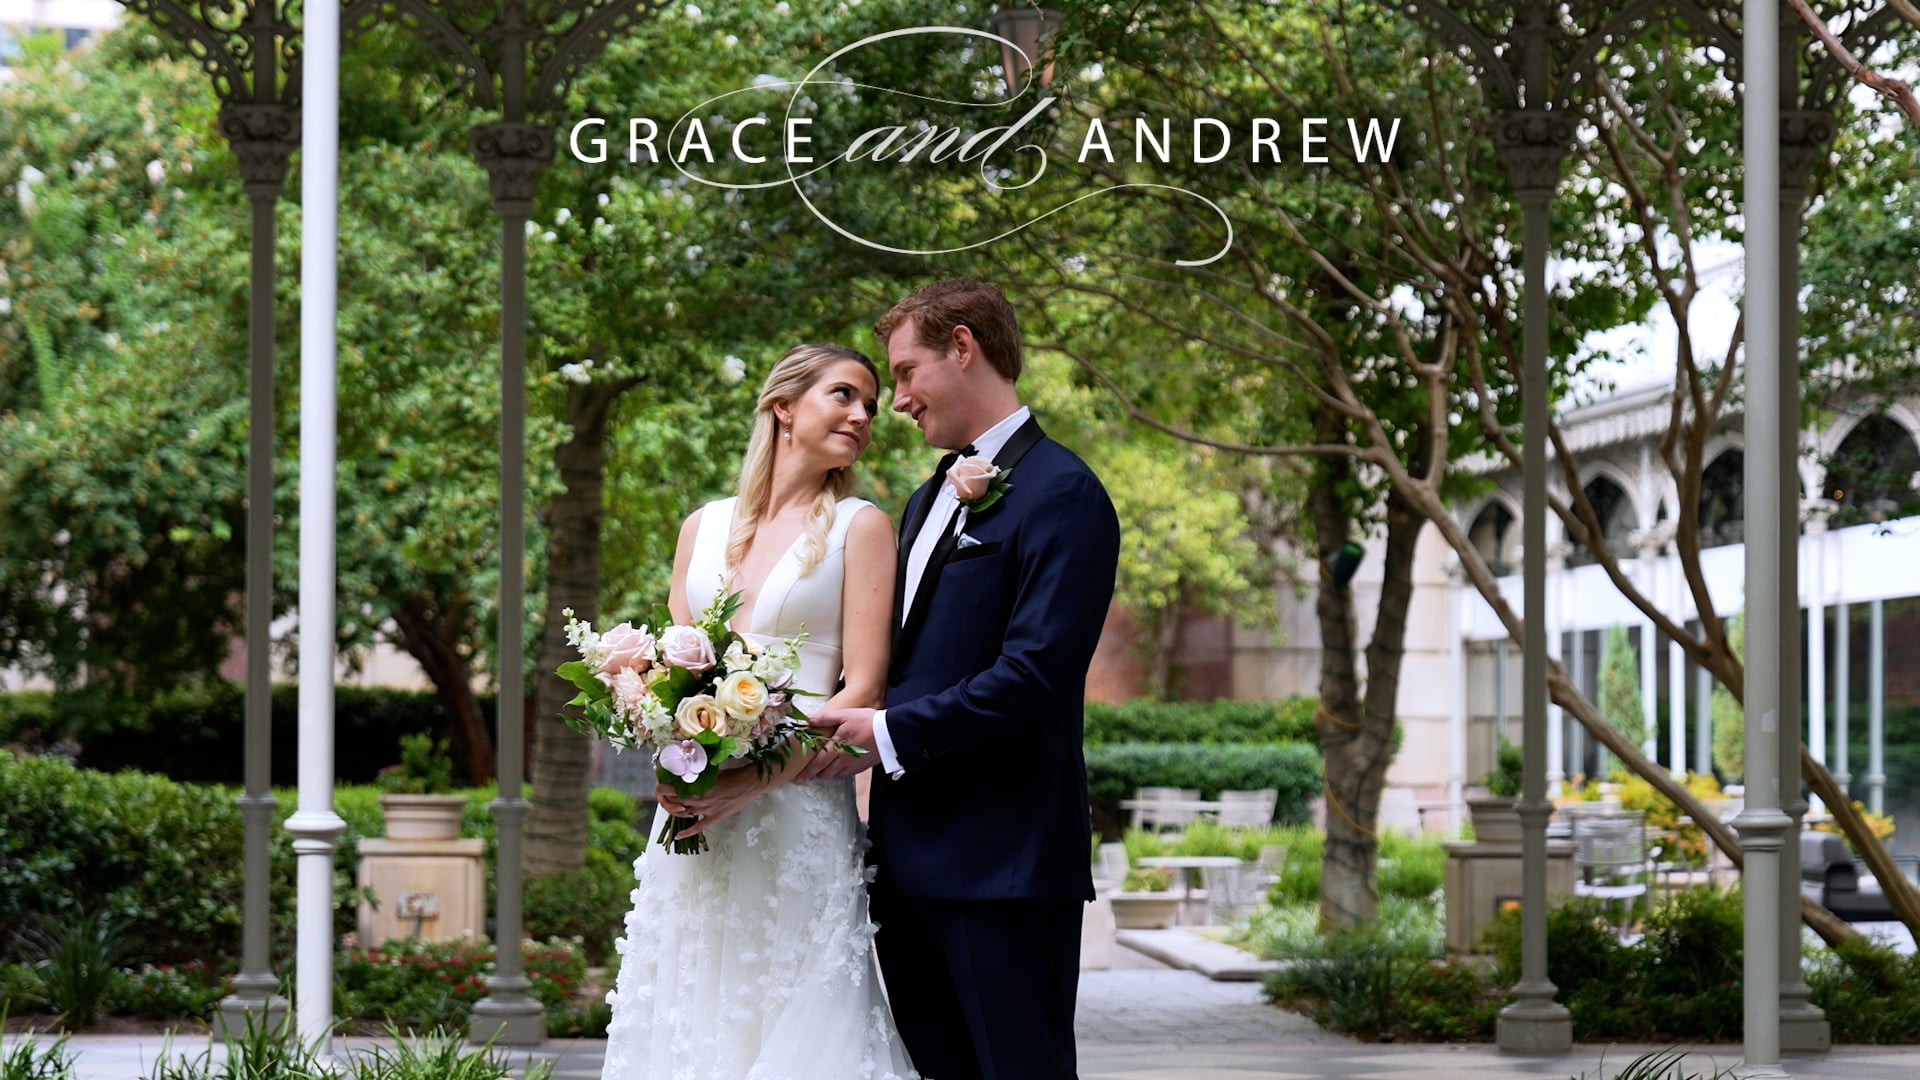 Grace & Andrew's Wedding Film